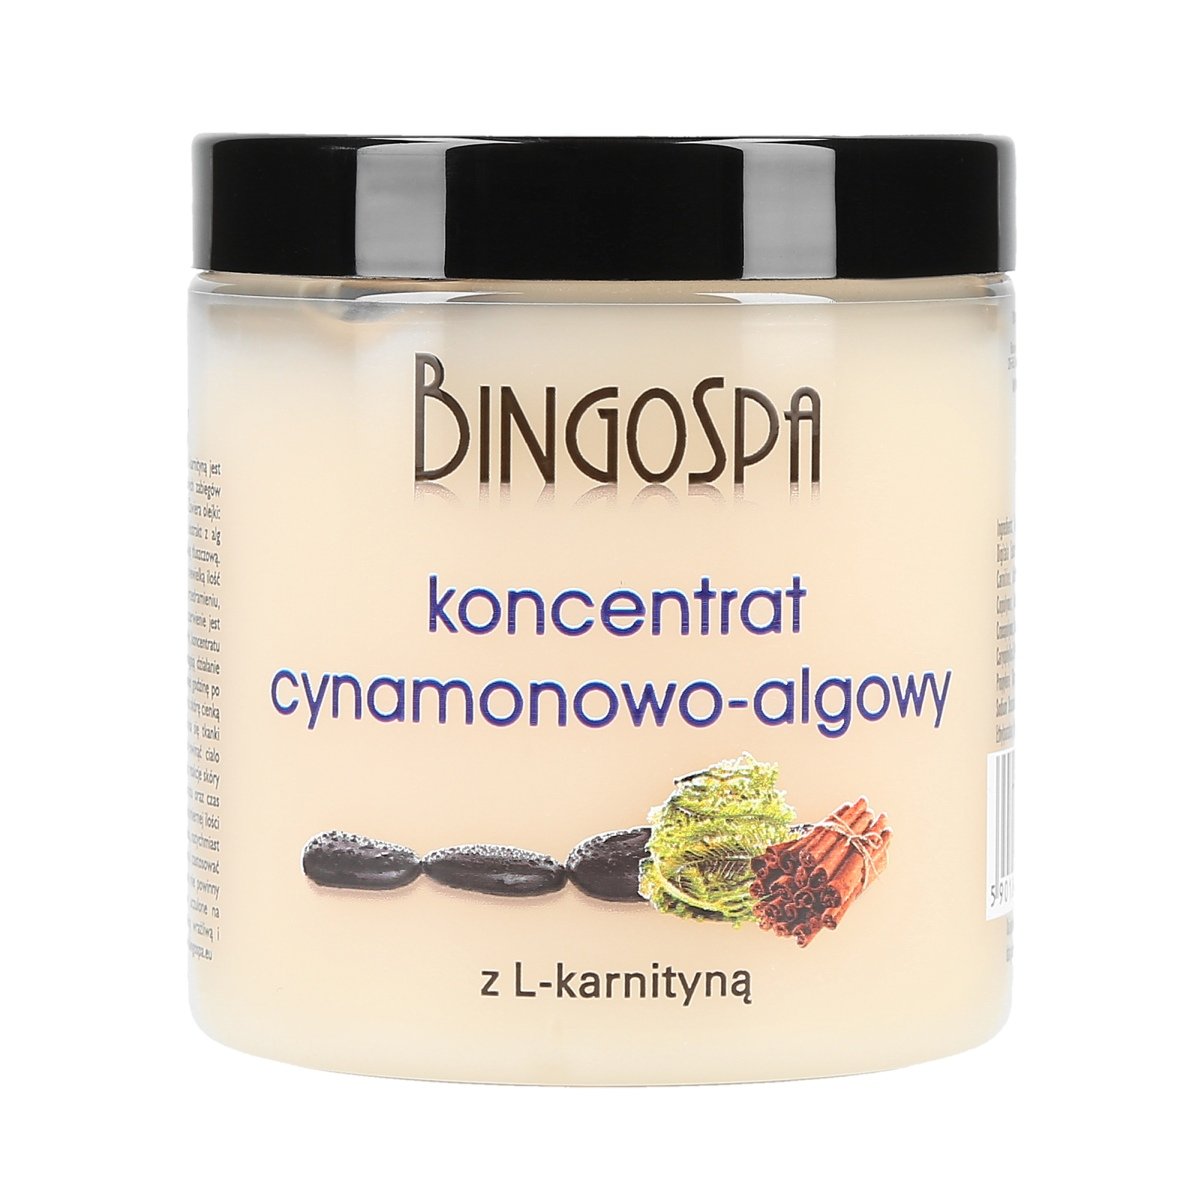 BingoSpa koncentrat cynamonowo-algowy z L-karnityną do ciała, 250 ml